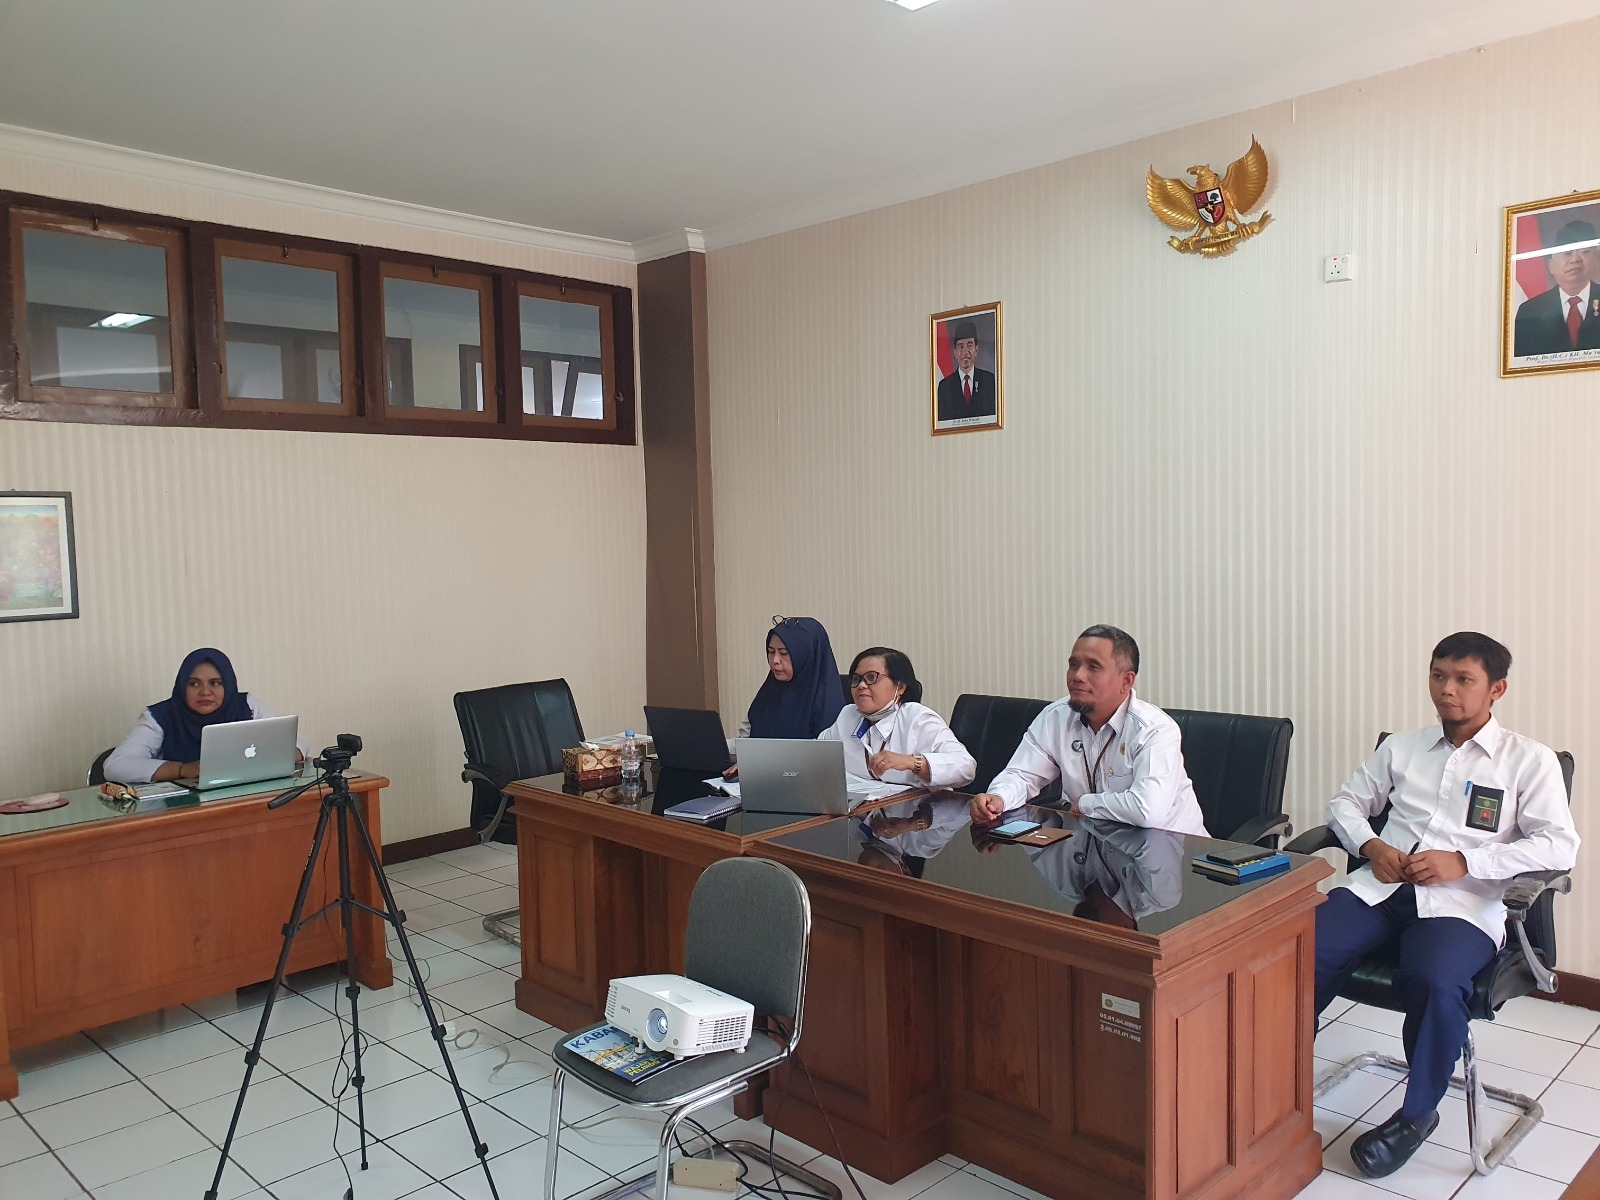 Pengadilan Negeri Yogyakarta Mengikuti Sosialisasi Penetapan Kelas Jabatan dan Penyesuaian Tukin Pegawai di Lingkungan Mahkamah Agung RI